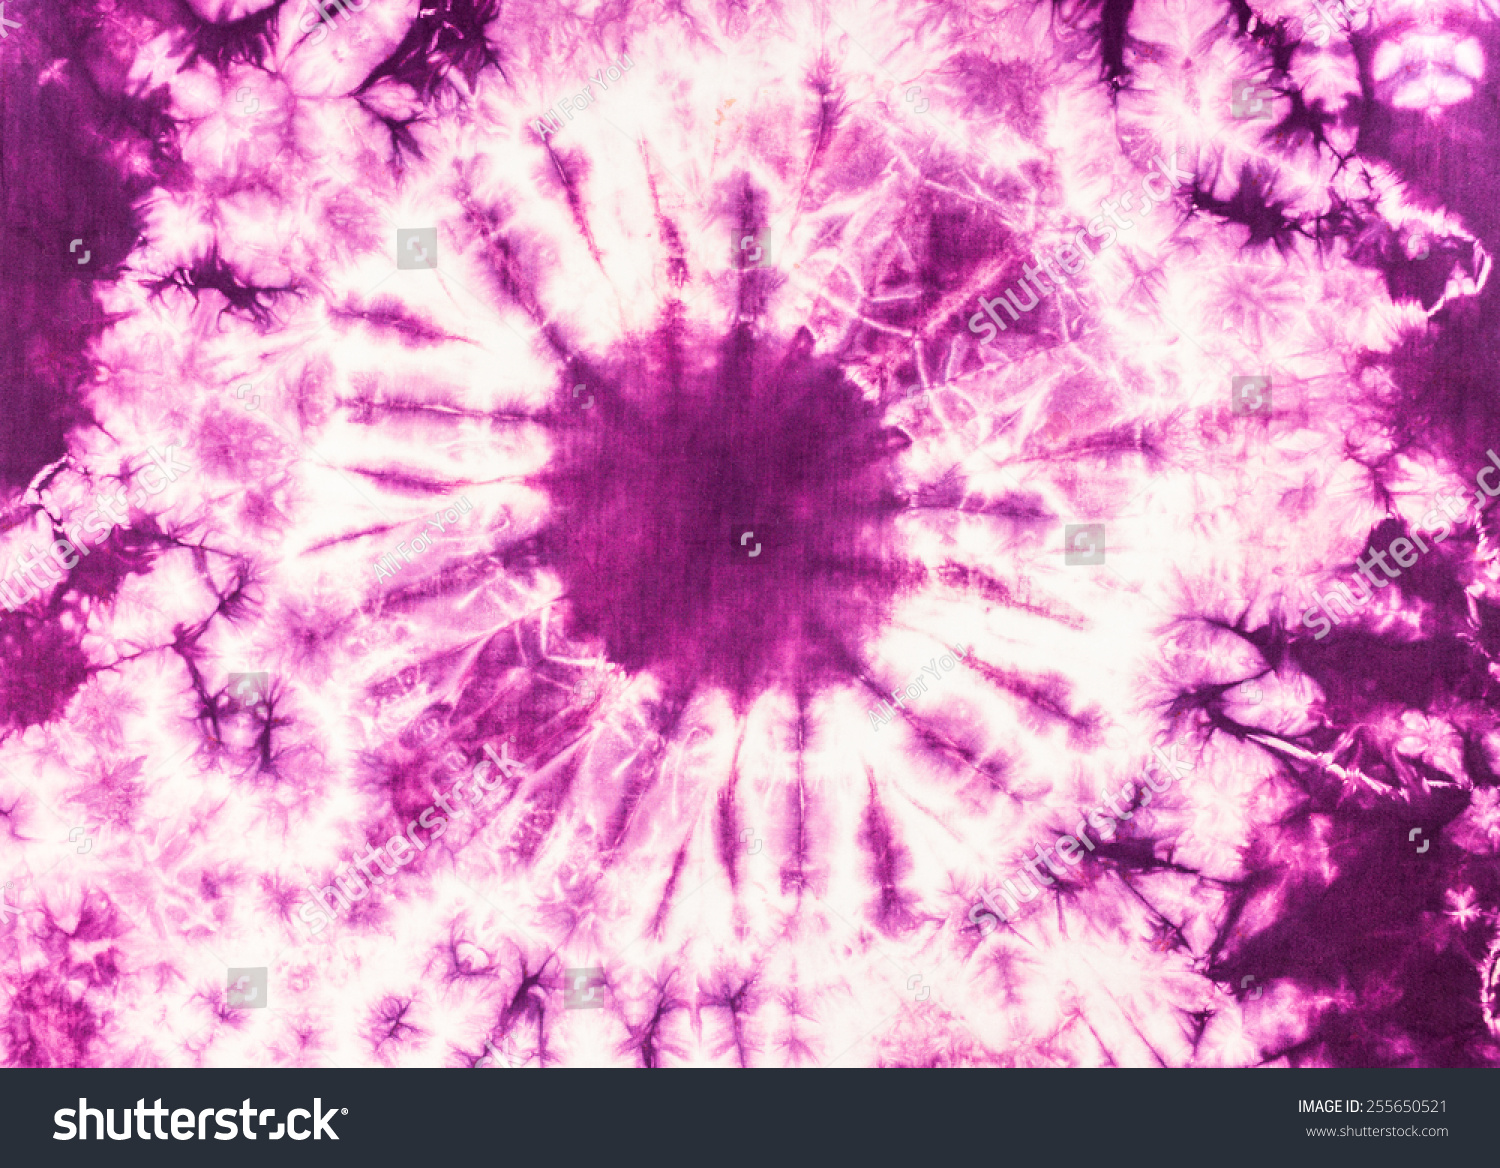 Purple Tie Dye Batik Fabric Background Stok Fotoğrafı 255650521 Shutterstoc...